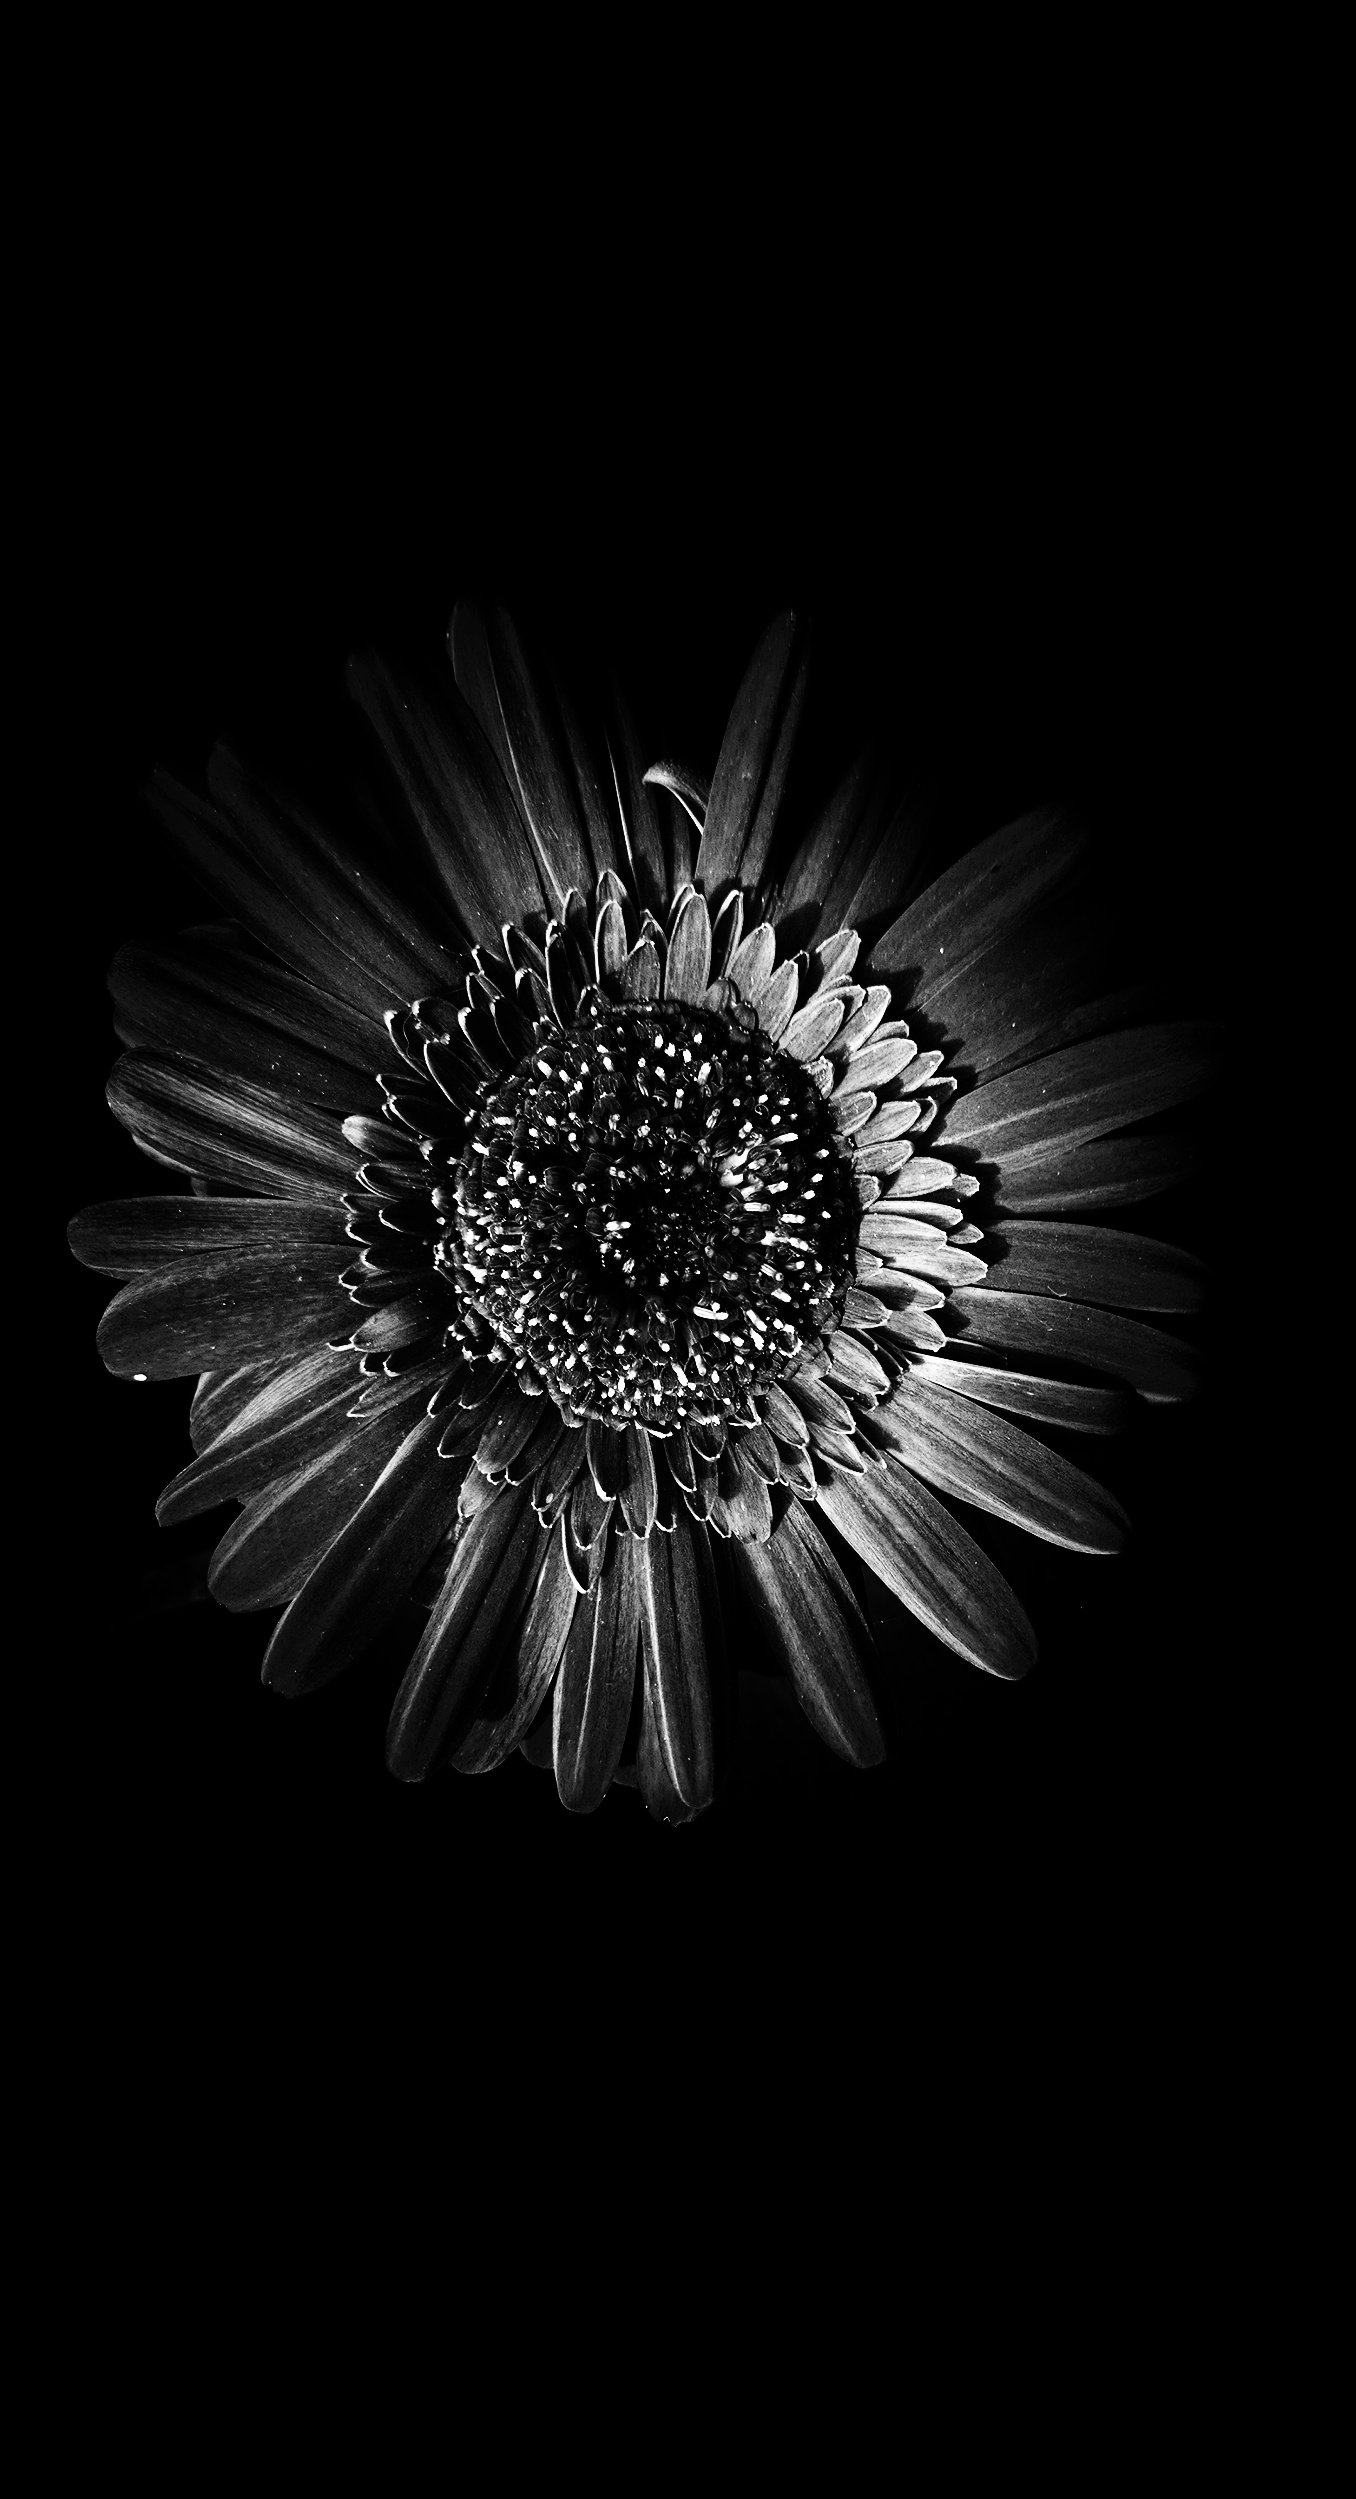 Sunflower in Black & White.